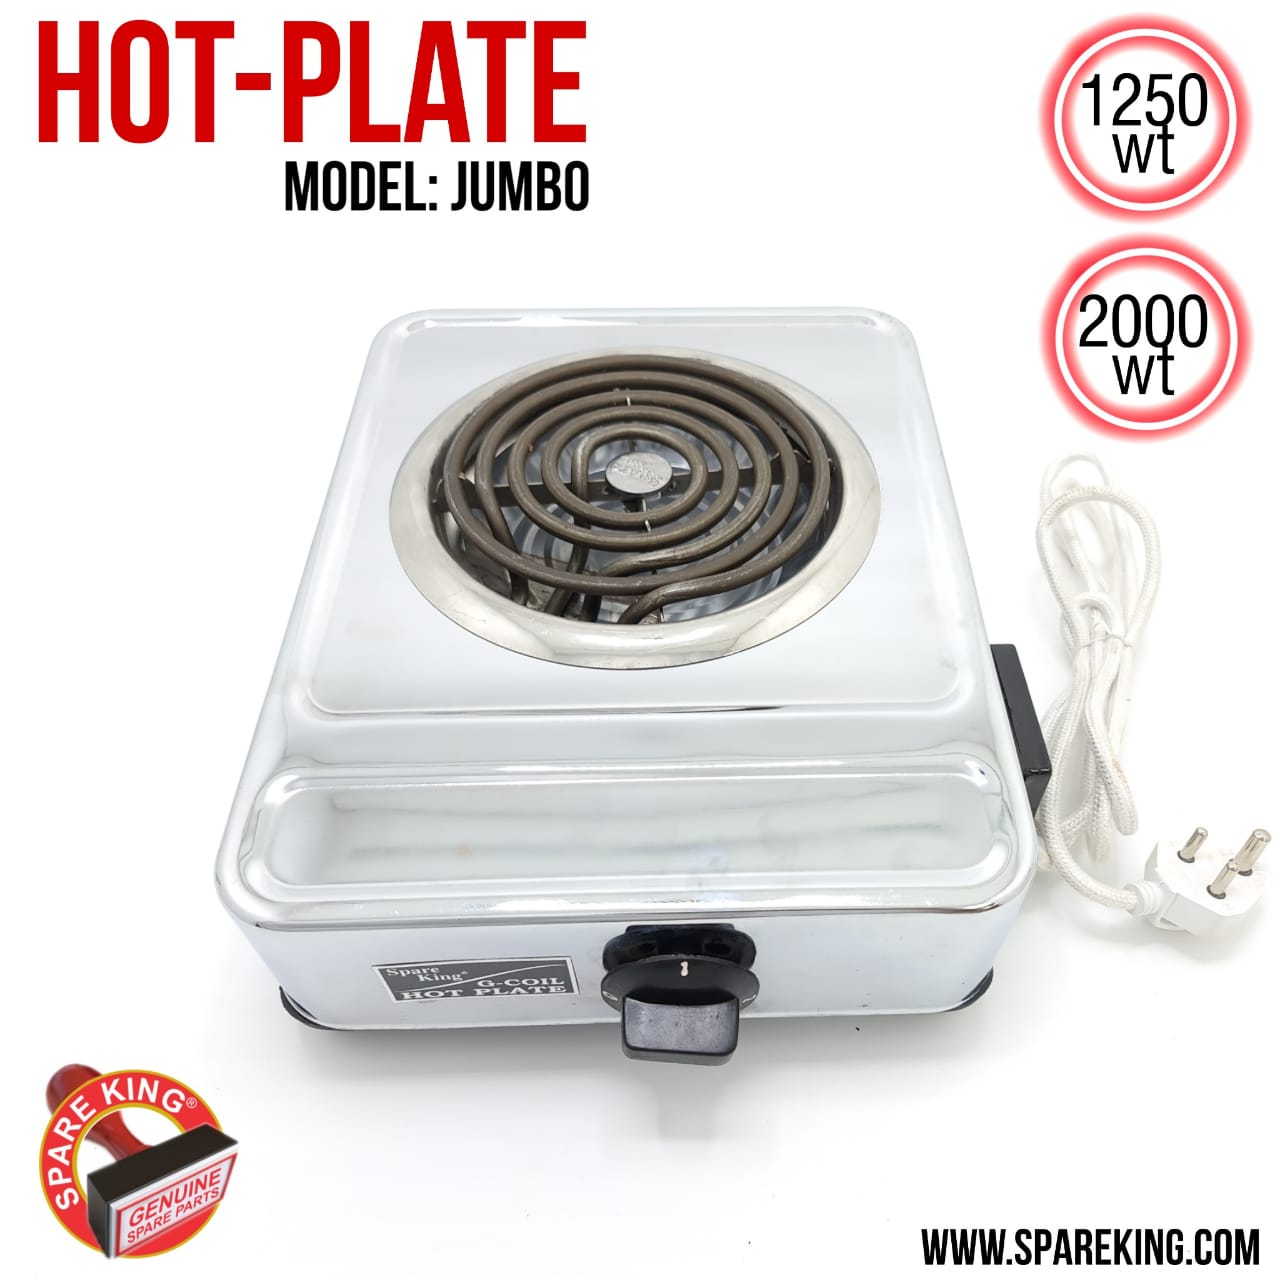 Hot Plate Model: Jumbo 2000wt